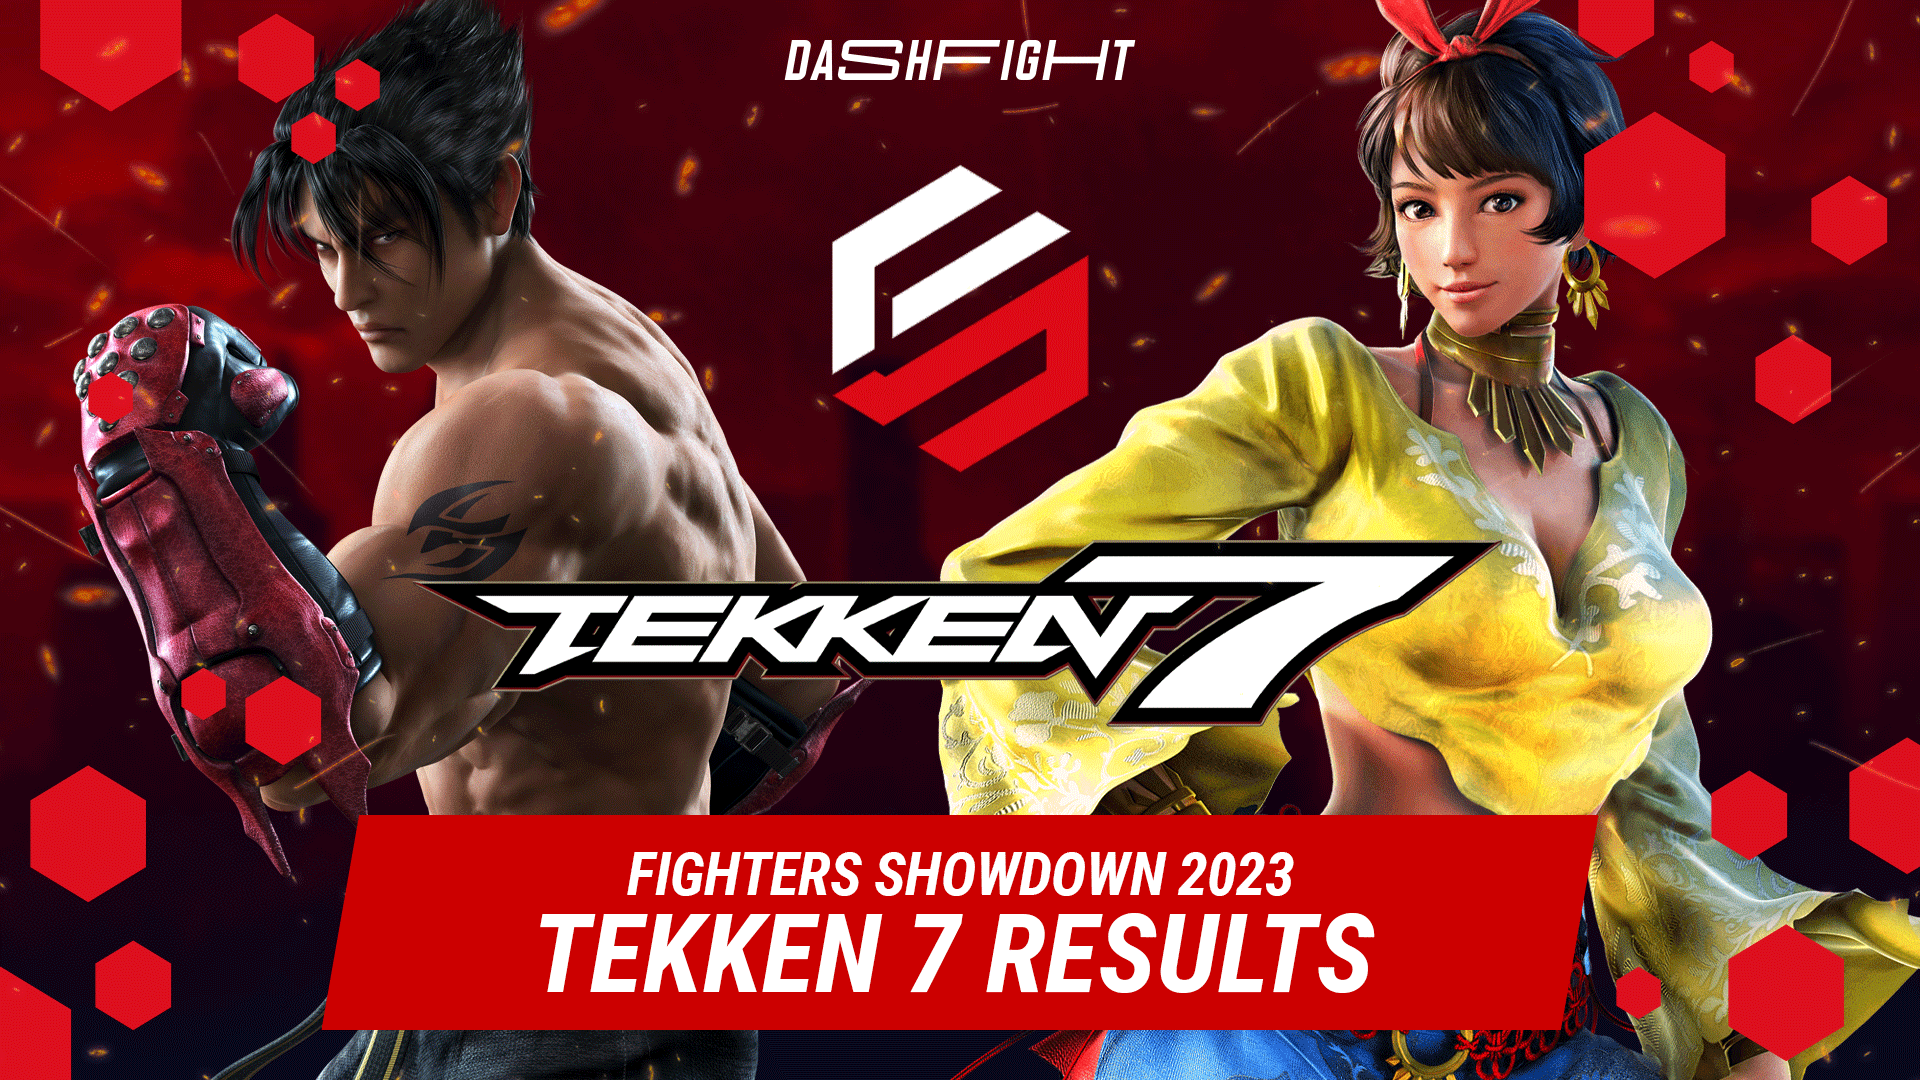 Tekken 7 at Fighters Showdown 2023: Final Fantasy